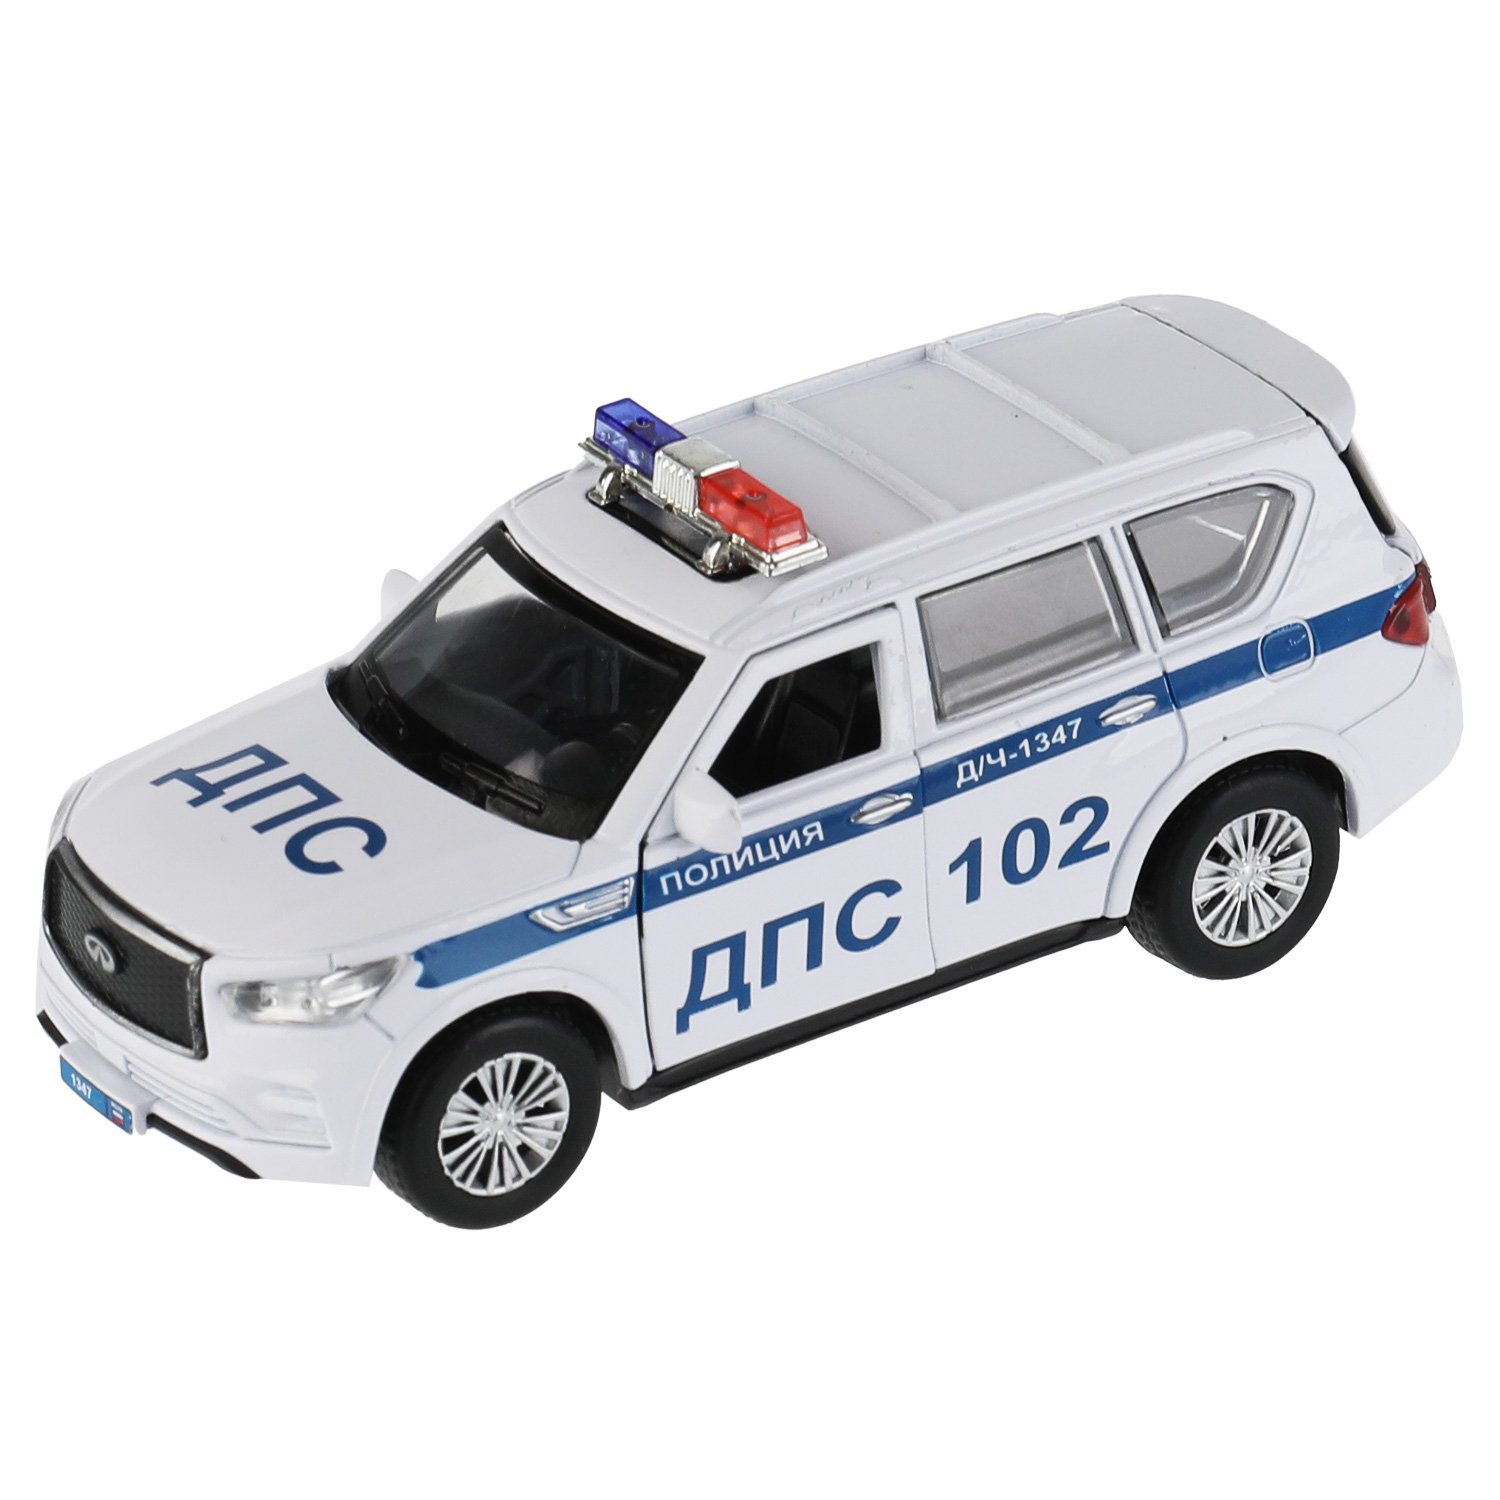 Машина металл Infiniti Qx80 Полиция, 12,5 см, (откр двери, баг, белый) инер, в коробке машина металл infiniti qx80 12 5 см откр двери багаж серый инер в коробке